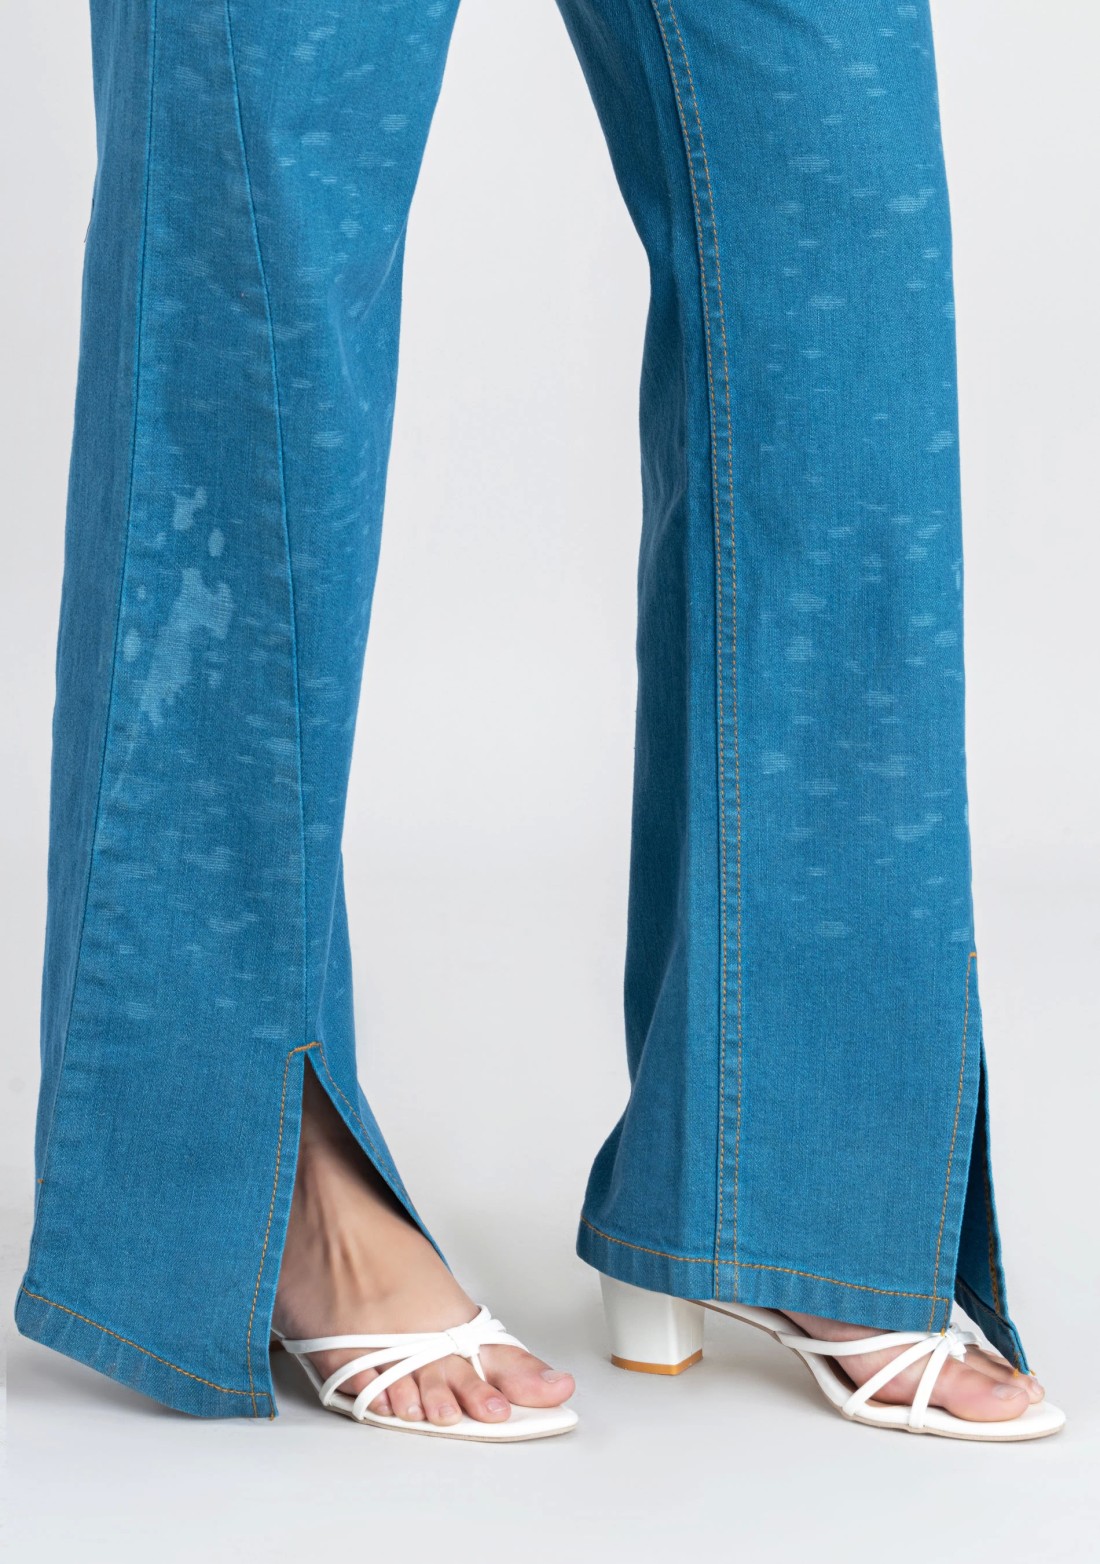 Light Blue Bottom Slit Wide Leg Women's Jeans